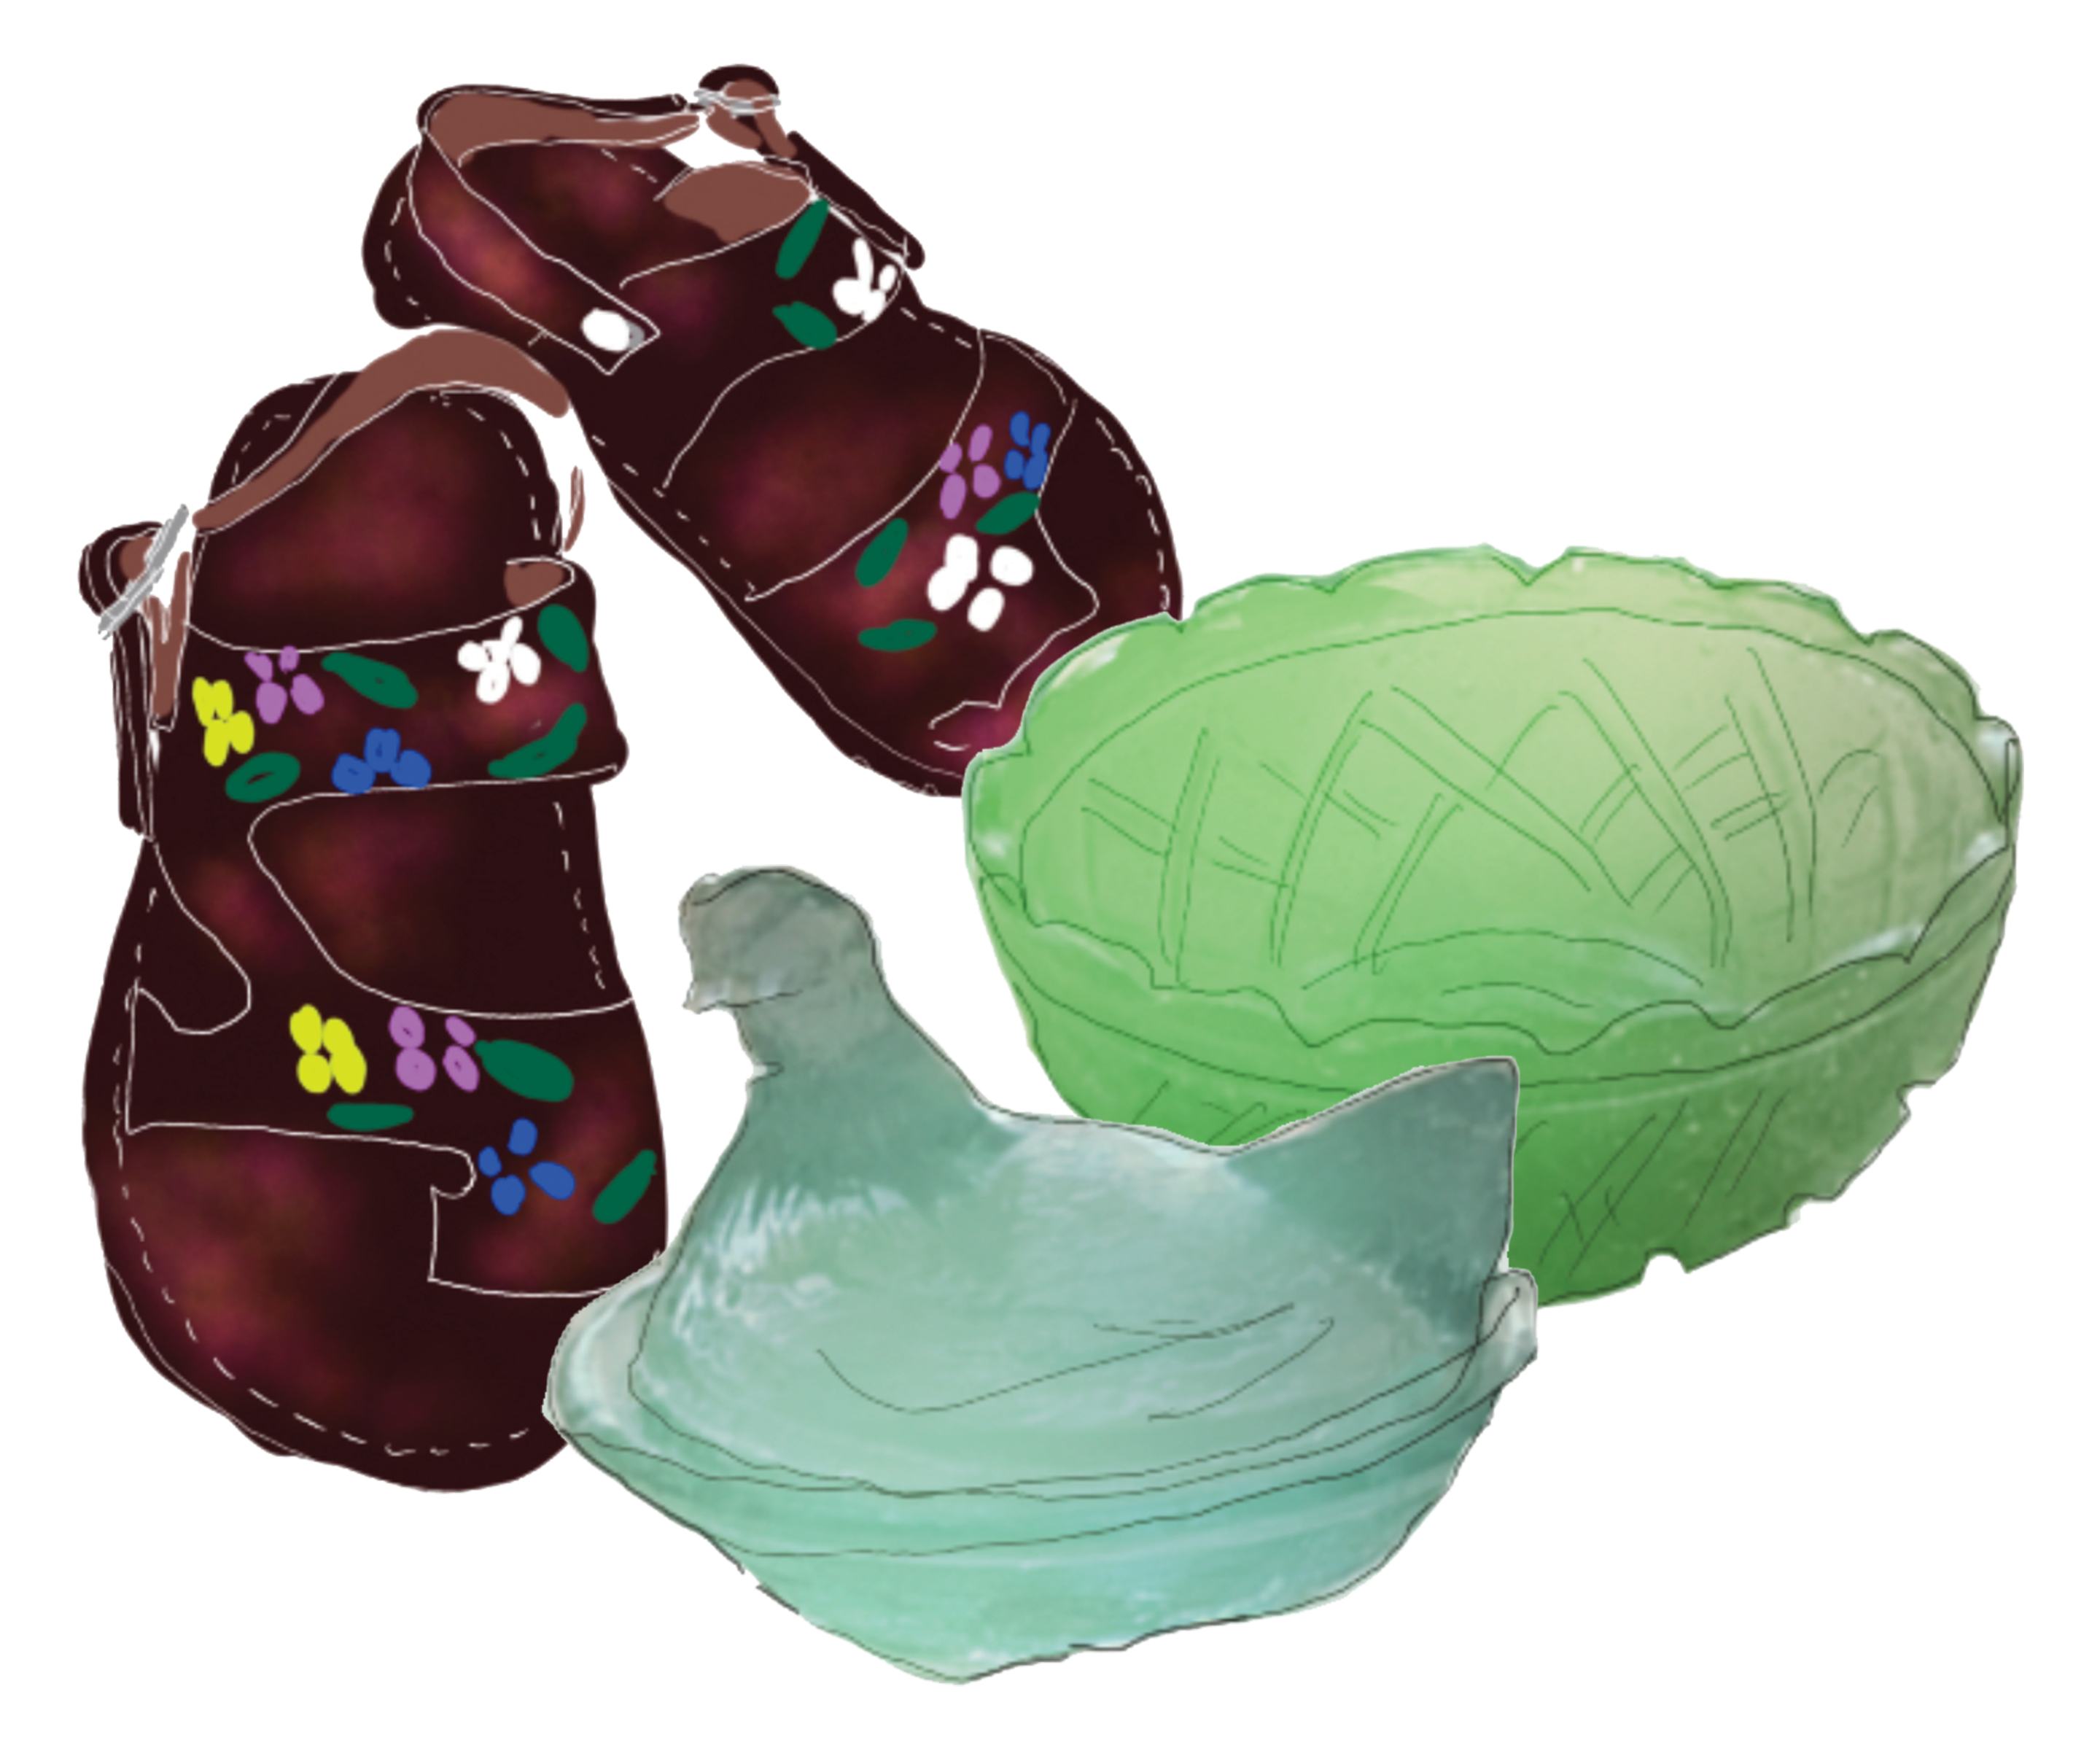 Illustration of sandlas and two glass bowls